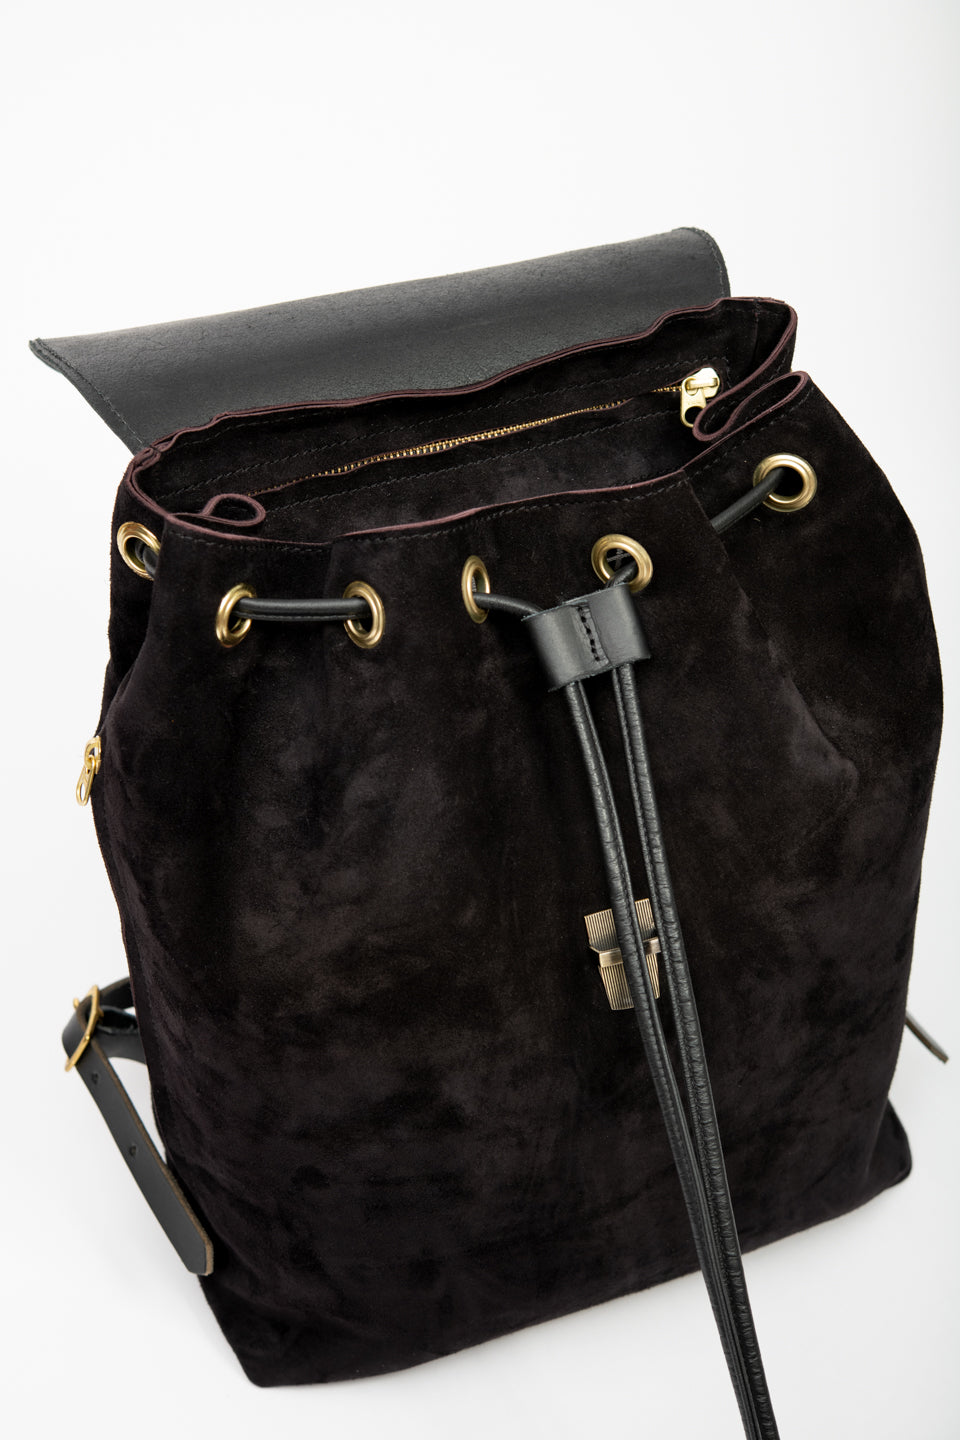 Leather rucksack MILAN model